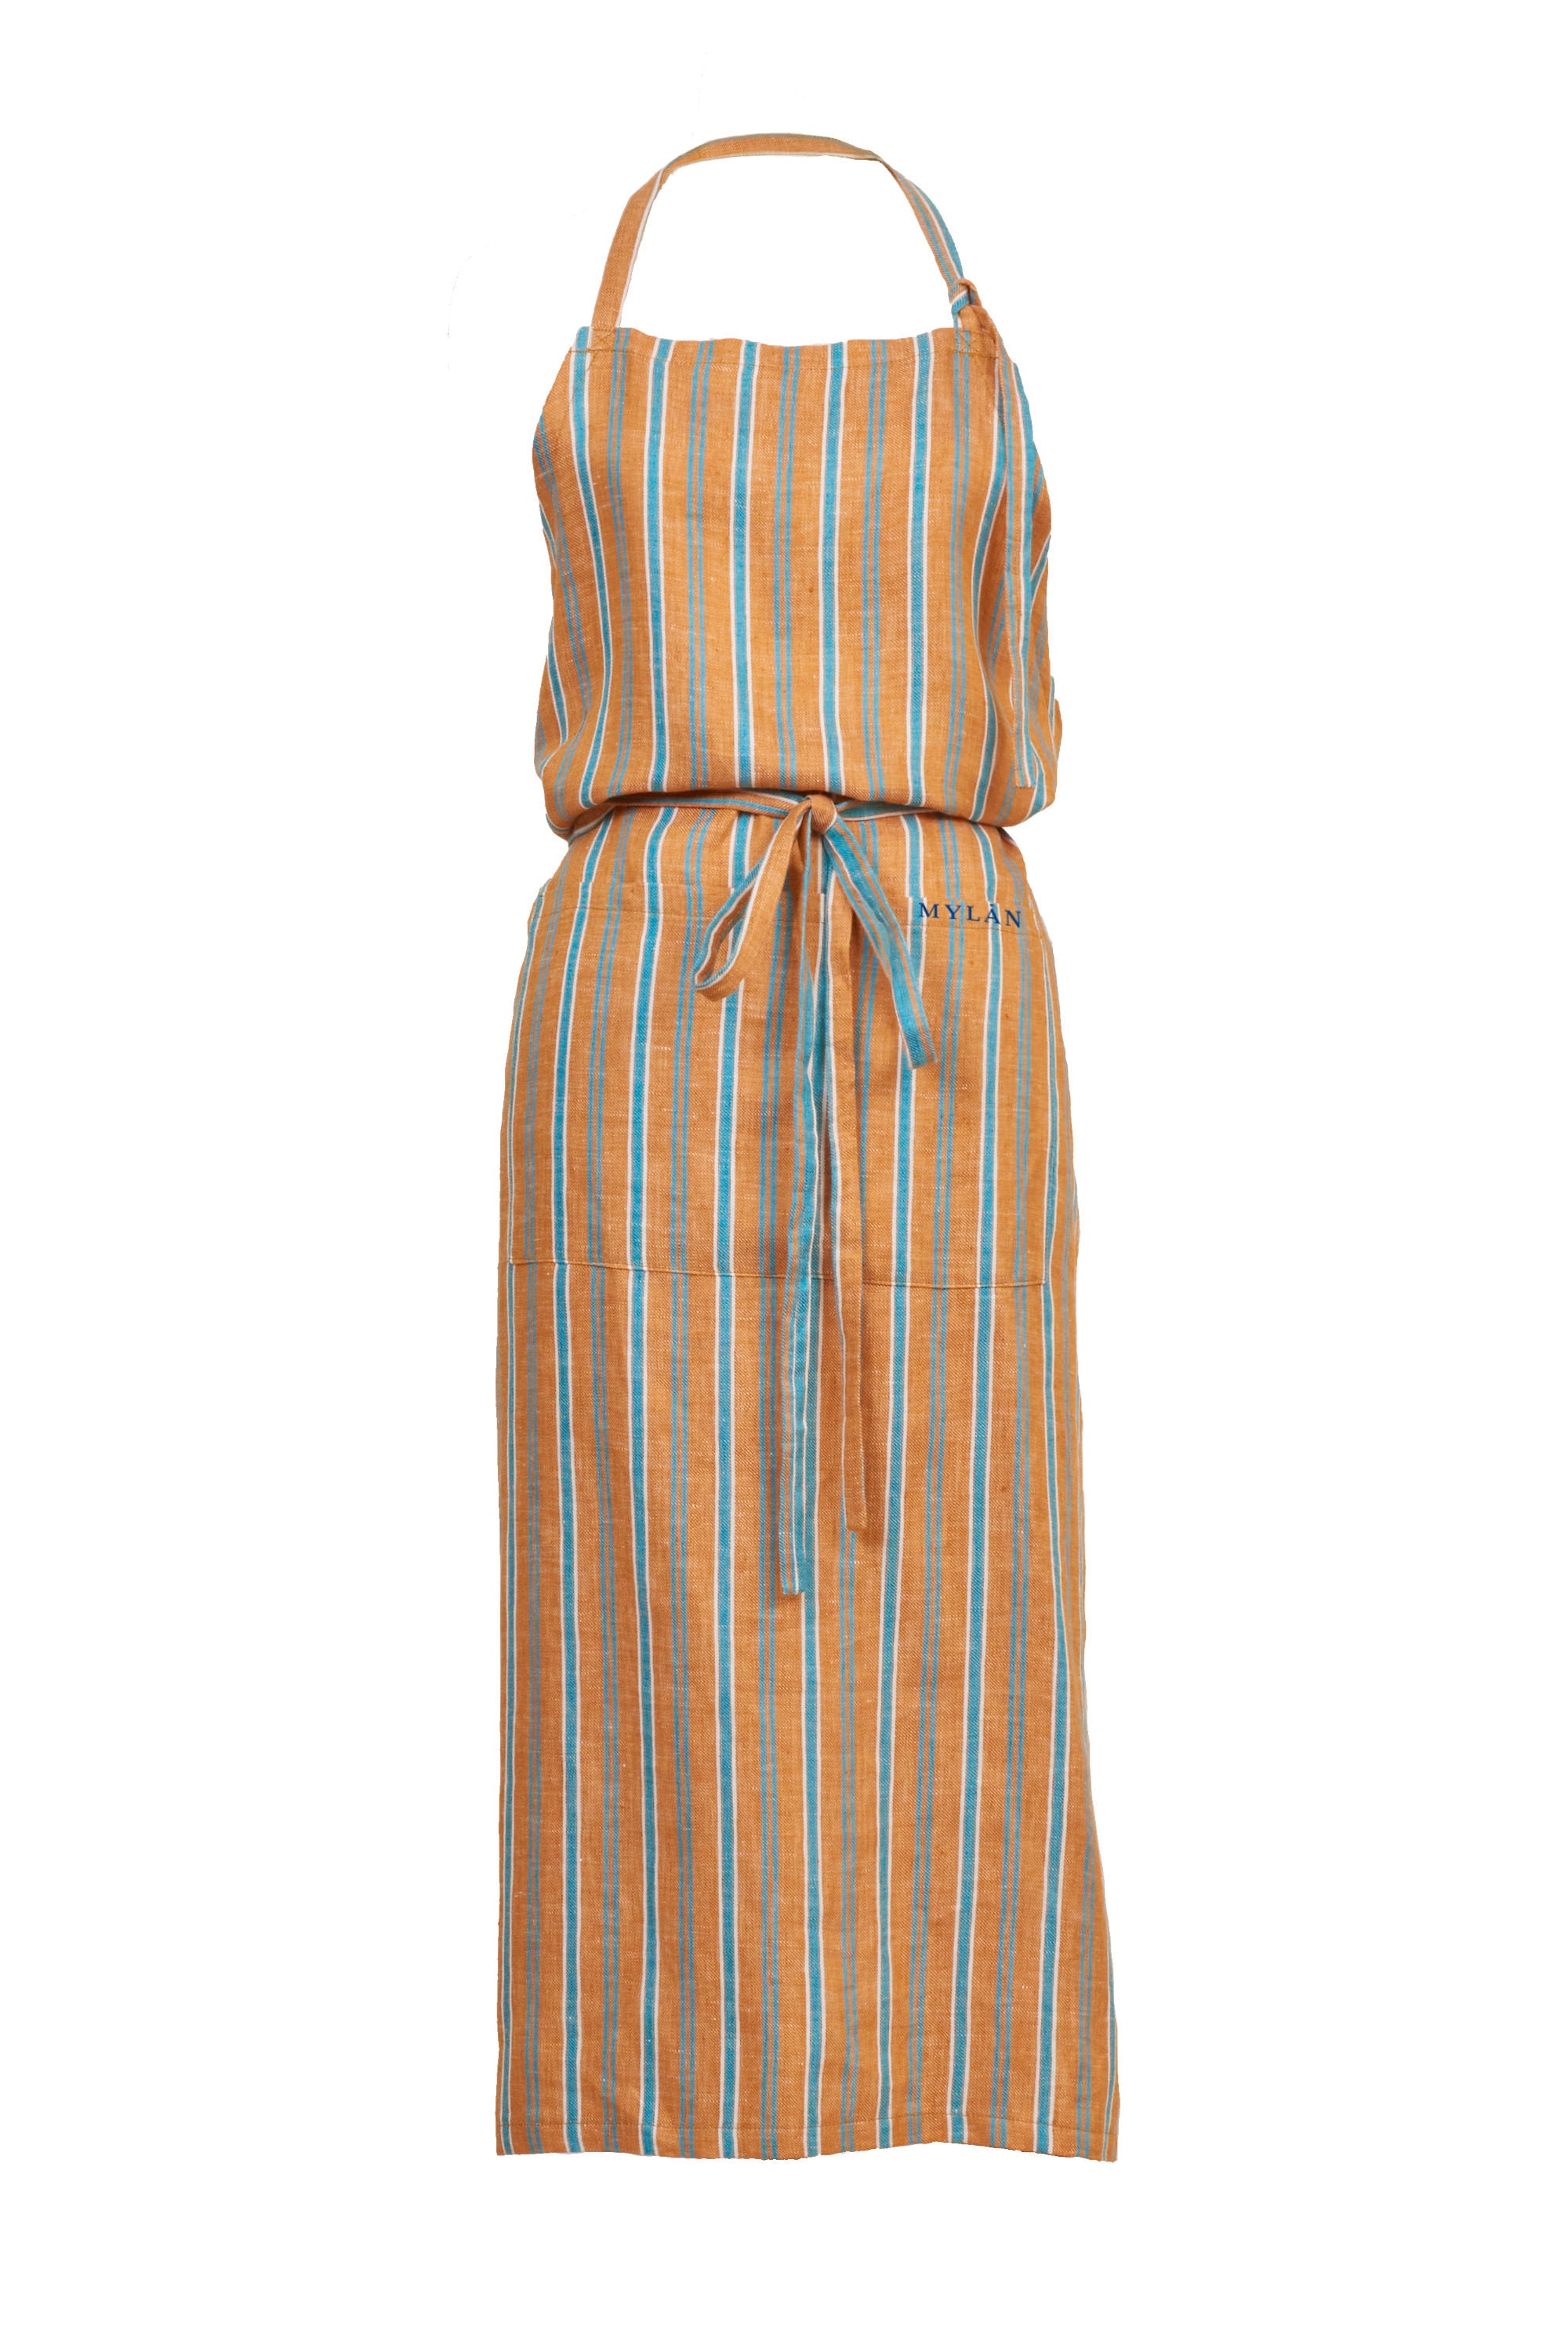 Stripe Linen Apron | Terracotta – MYLAN ONLINE SHOP